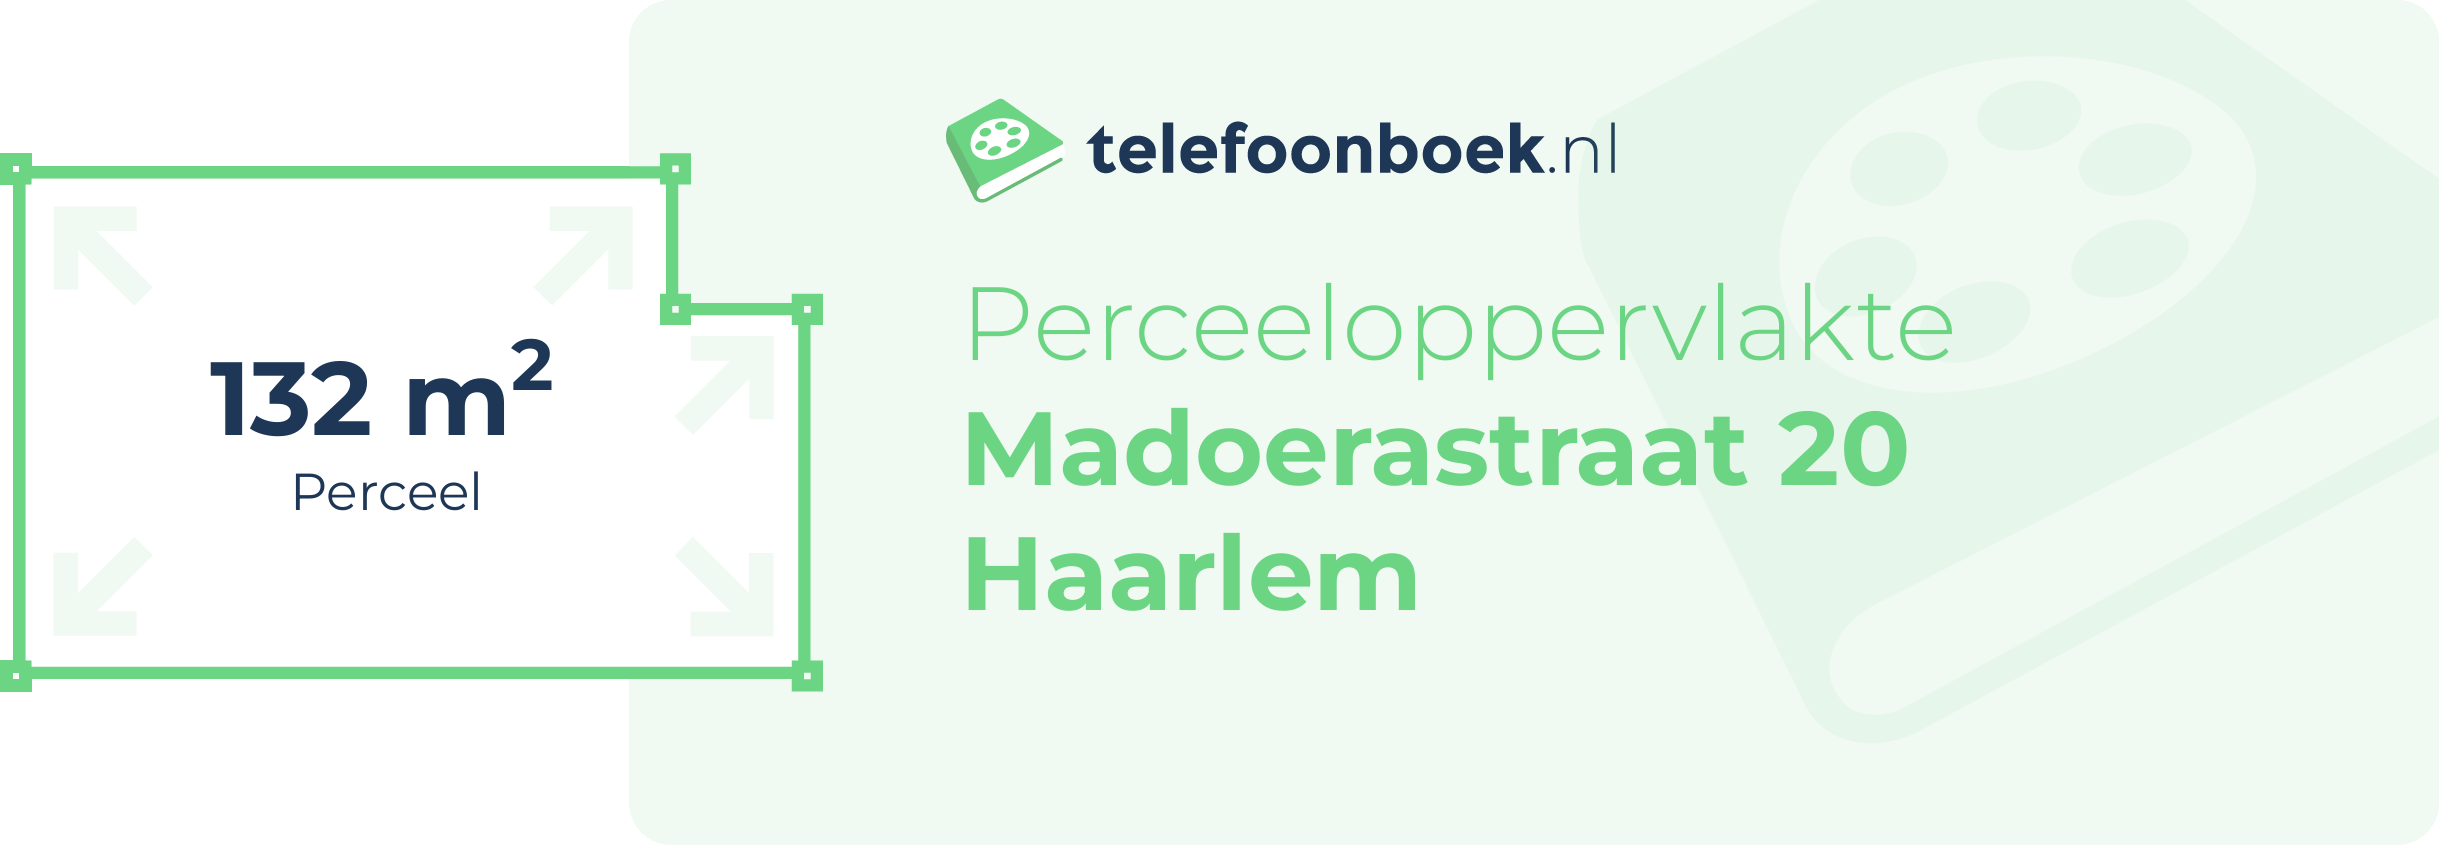 Perceeloppervlakte Madoerastraat 20 Haarlem